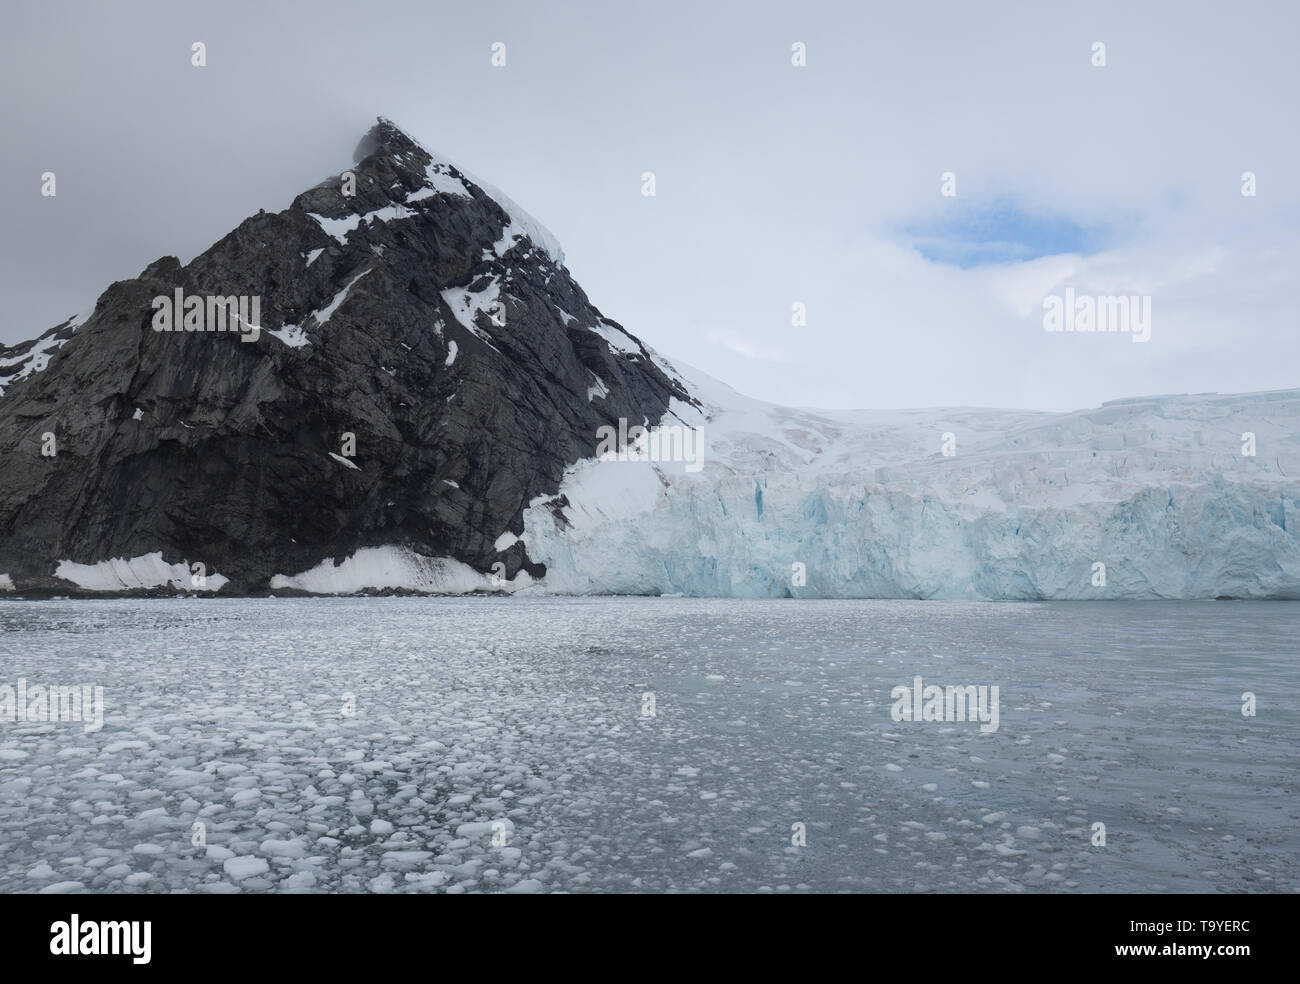 Une falaise de pierre gris foncé émergeant de l'océan Atlantique avec un glacier tomber à l'eau, dans l'Antarctique. Banque D'Images